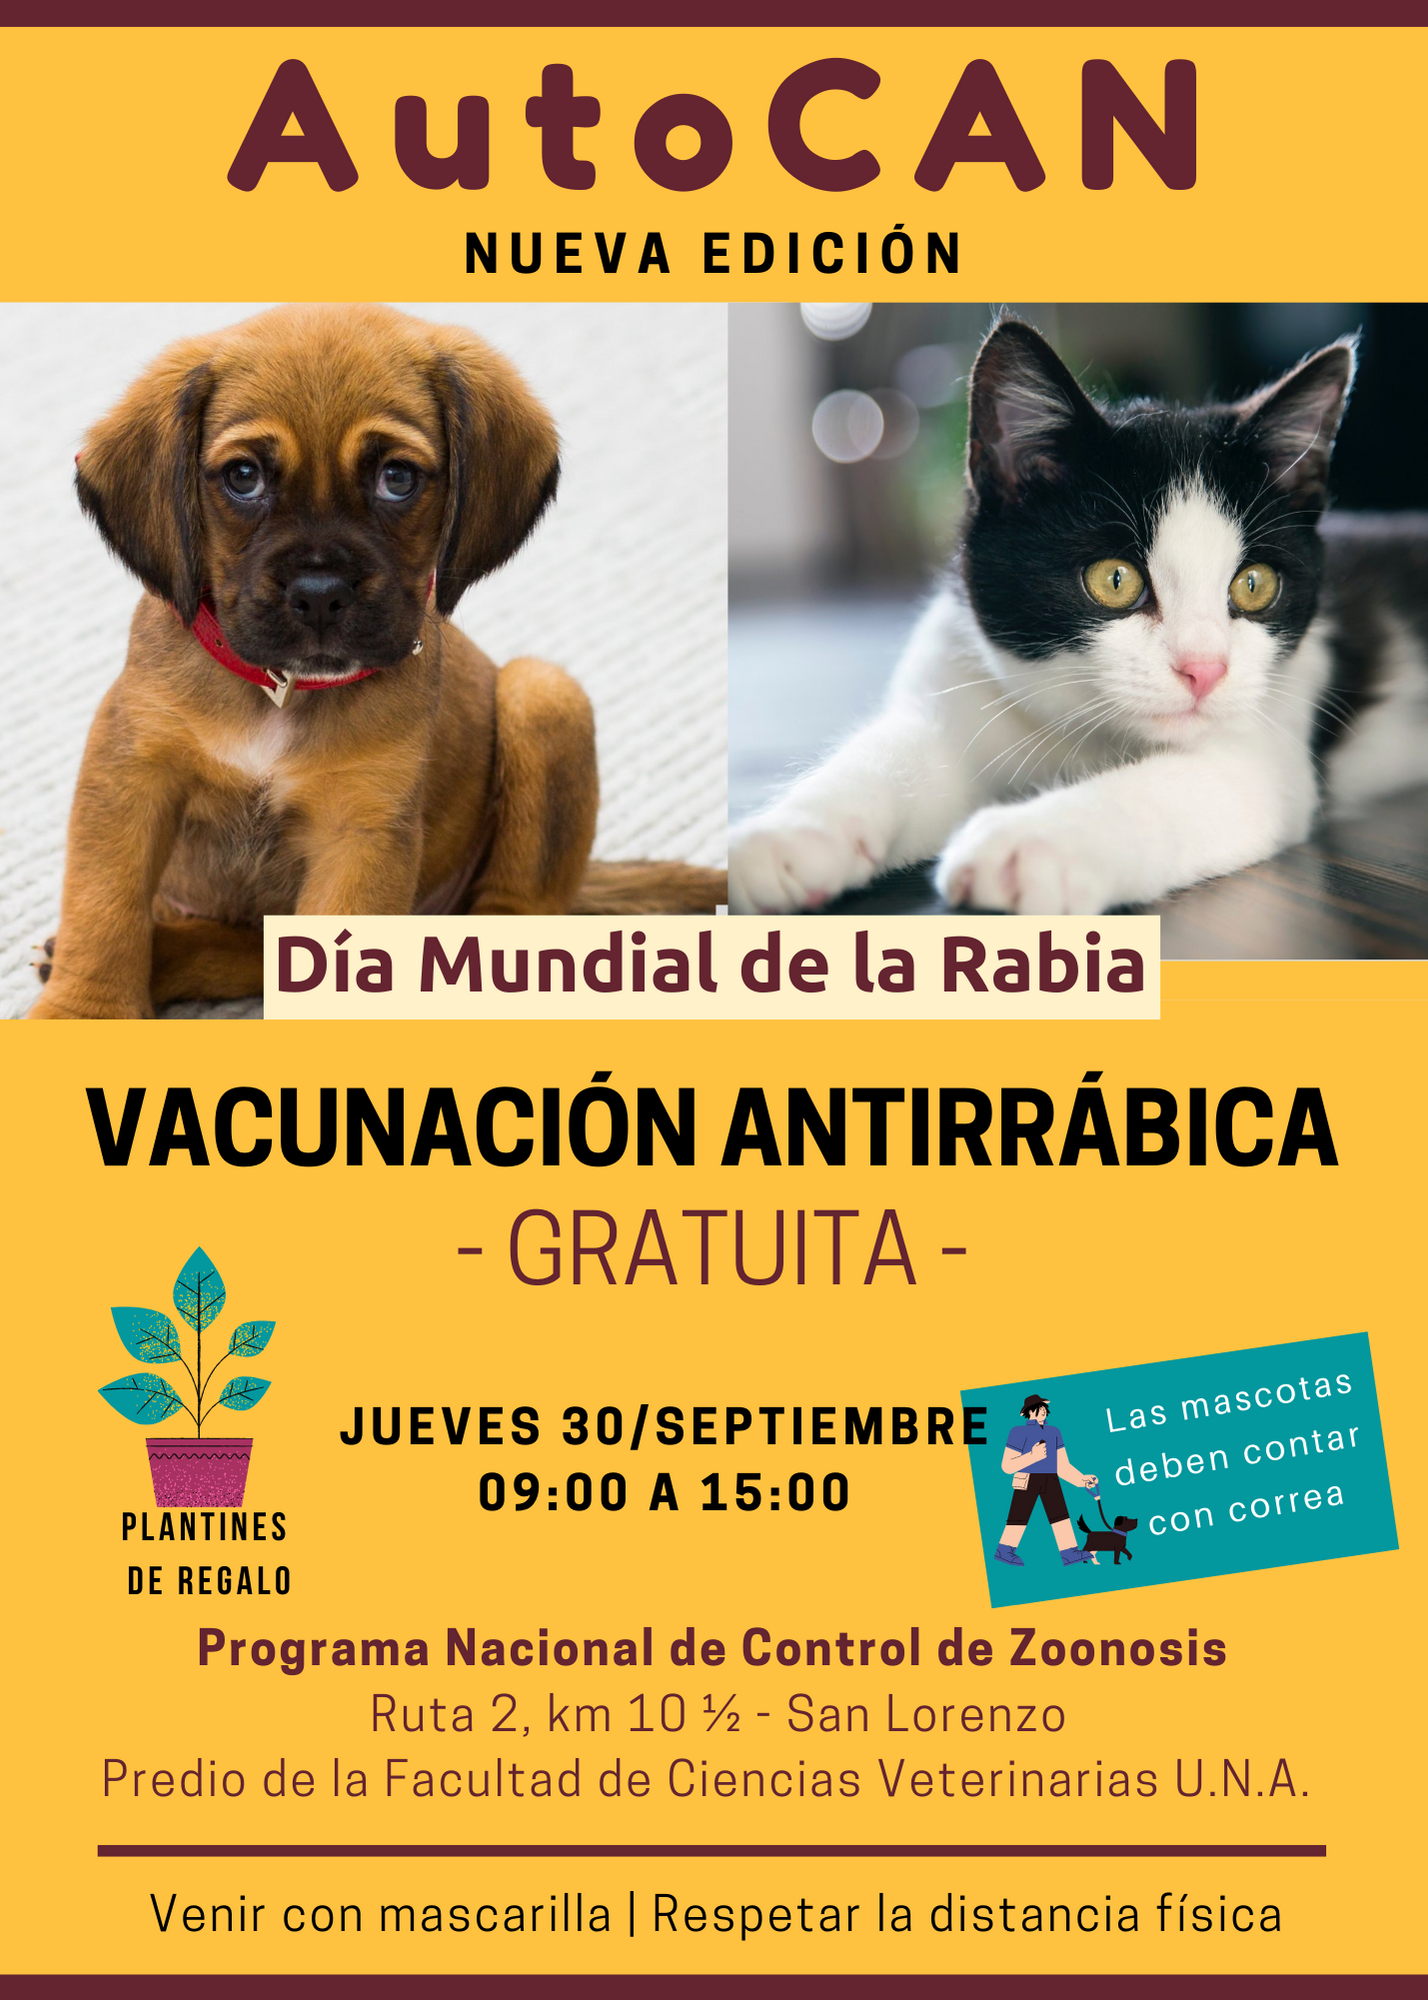 Este jueves, vacunación antirrábica gratuita para gatos y perros